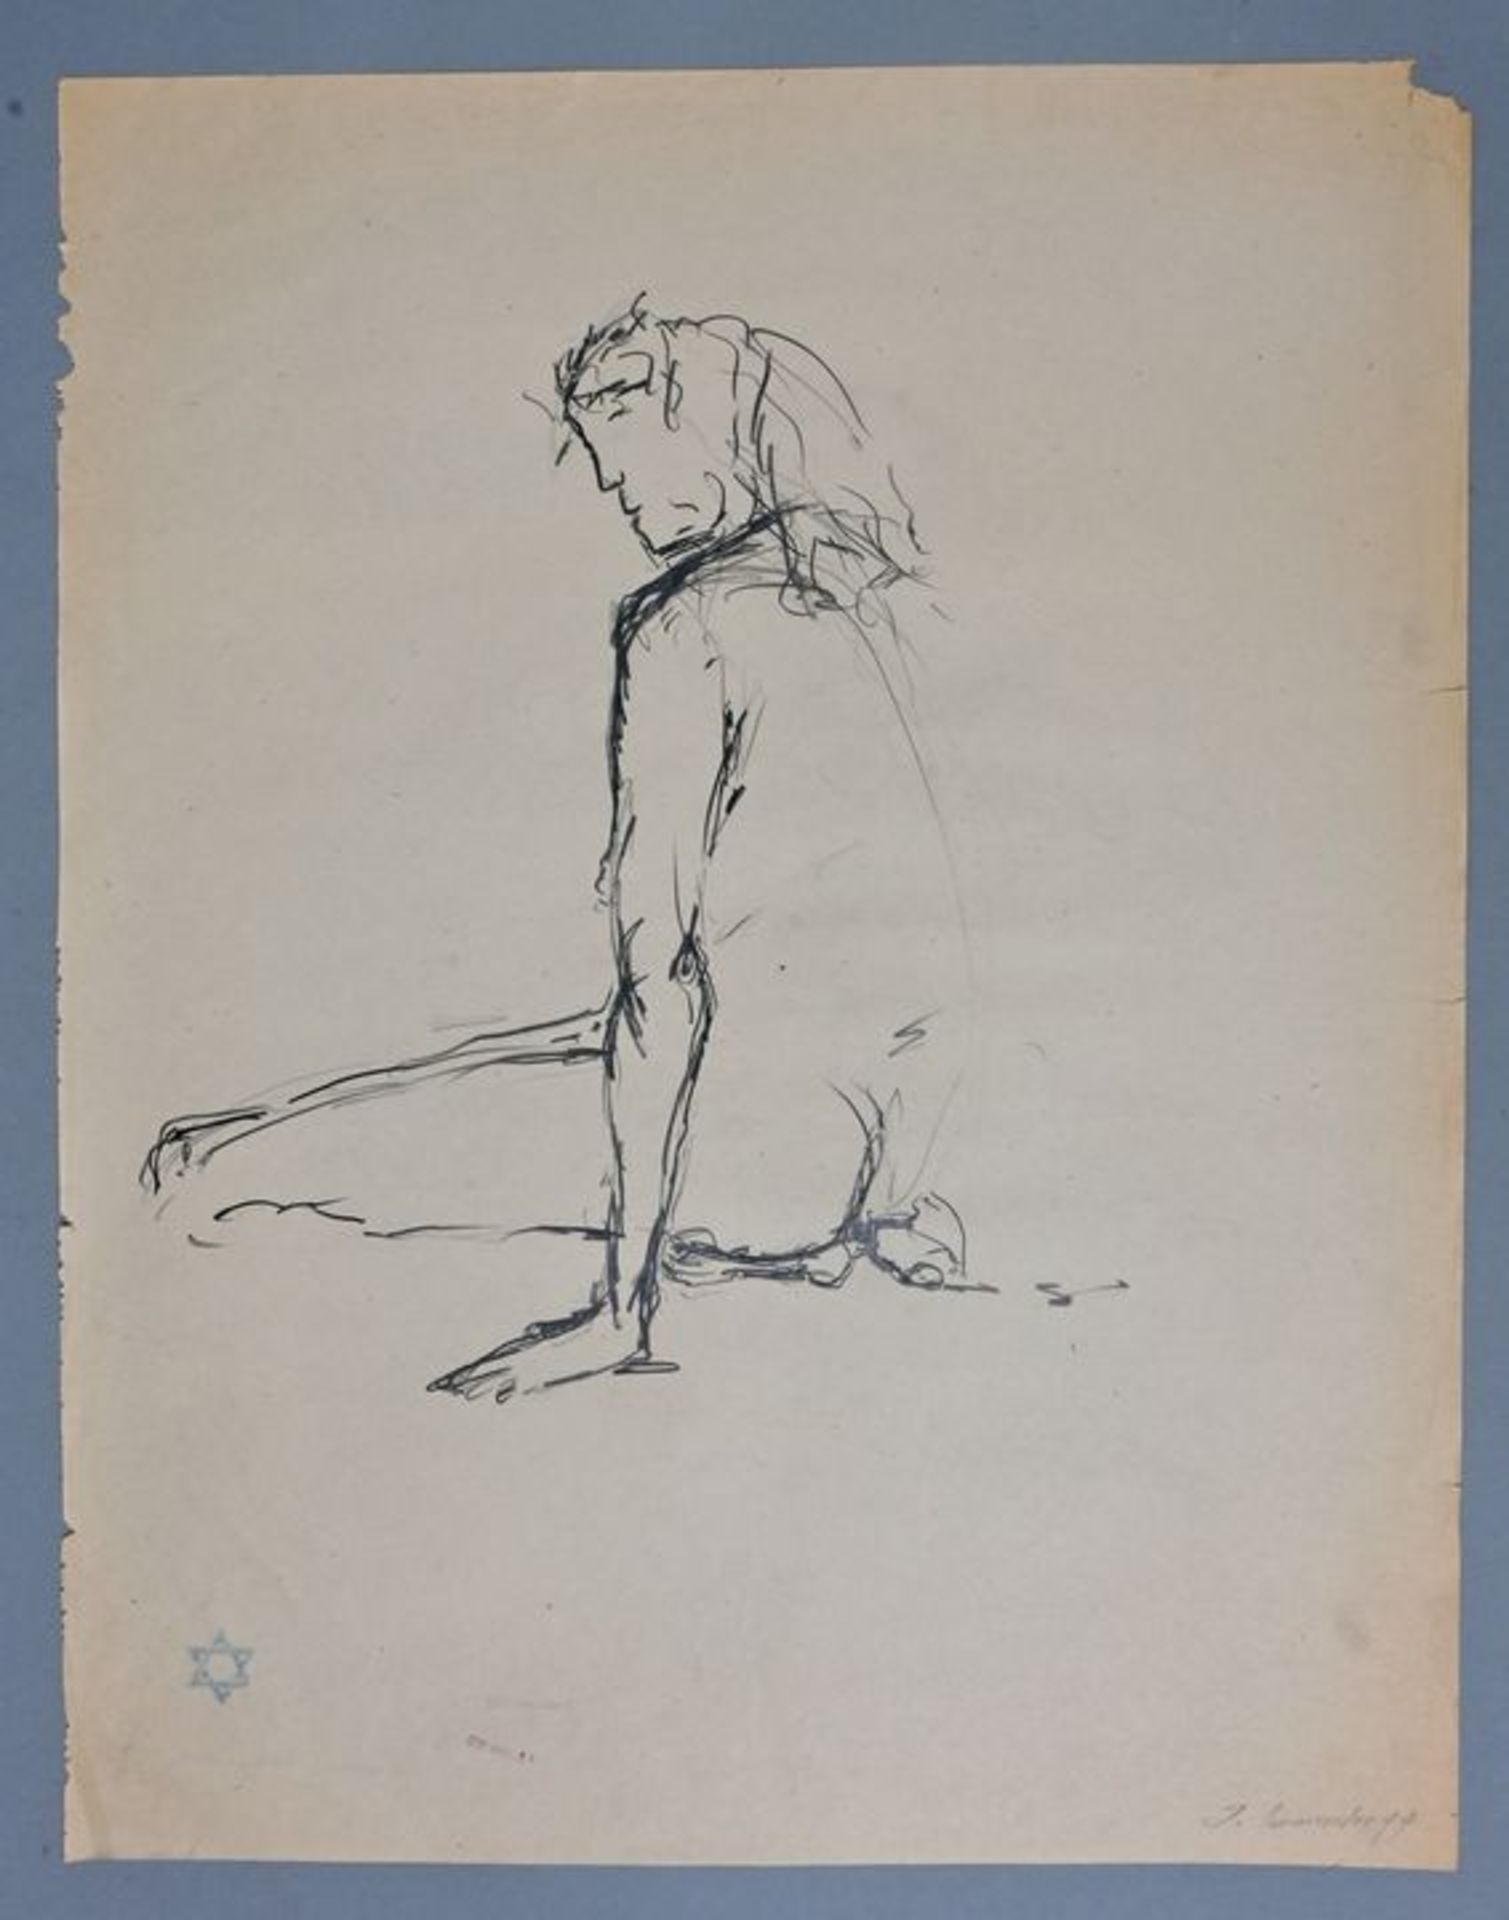 Immendorff, Jörg, Konvolut von Aktzeichnugen / Immendorff, nude drawings